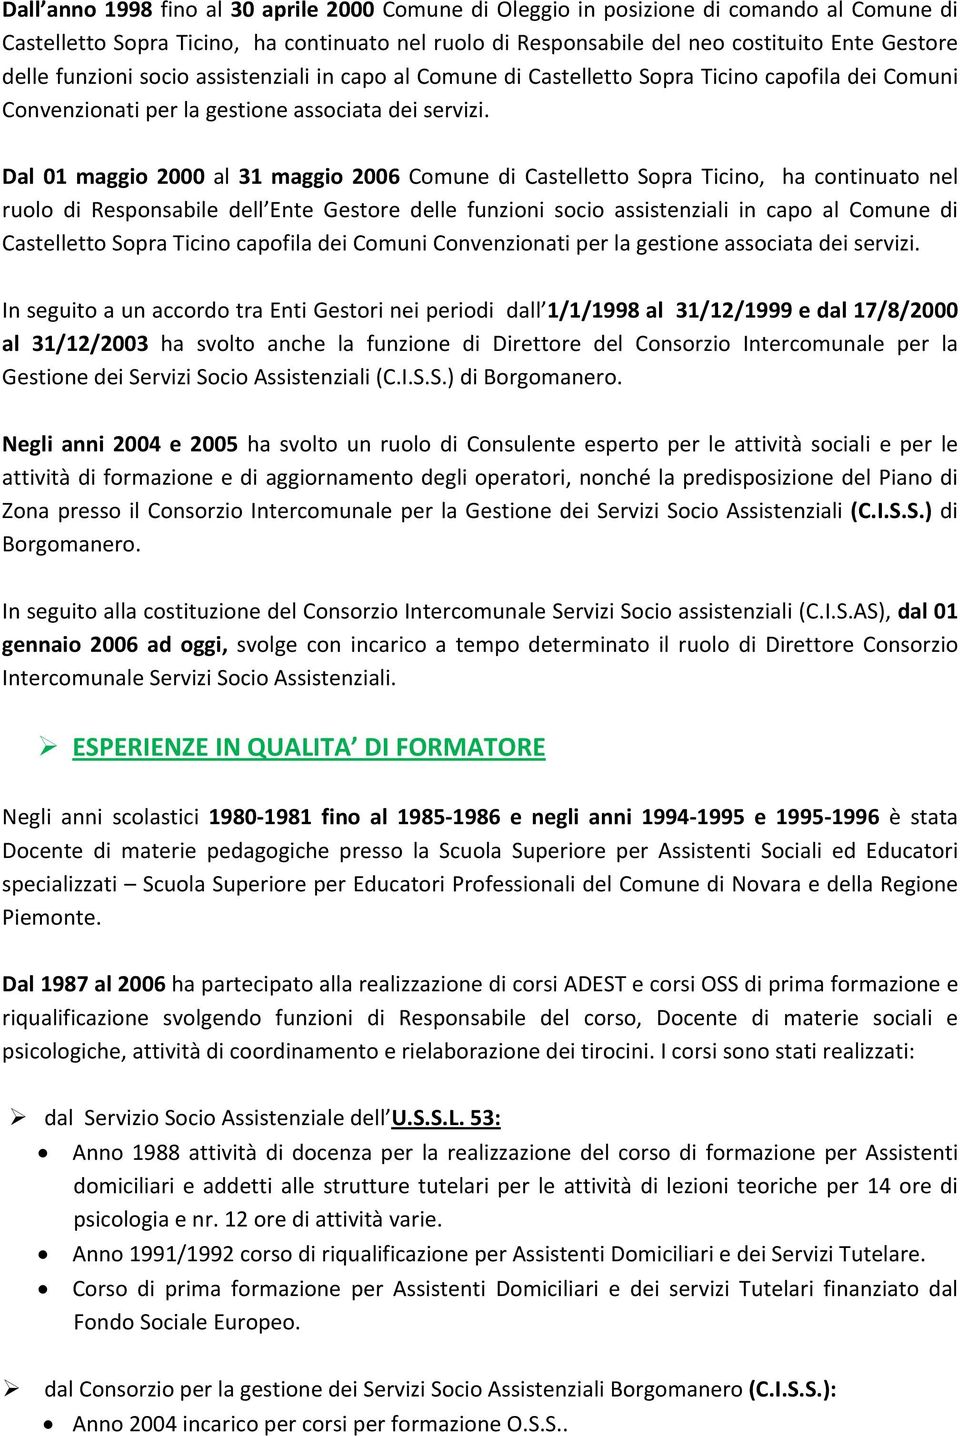 Dal 01 maggio 2000 al 31 maggio 2006 Comune di Castelletto Sopra Ticino, ha continuato nel ruolo di Responsabile dell Ente Gestore delle  In seguito a un accordo tra Enti Gestori nei periodi dall